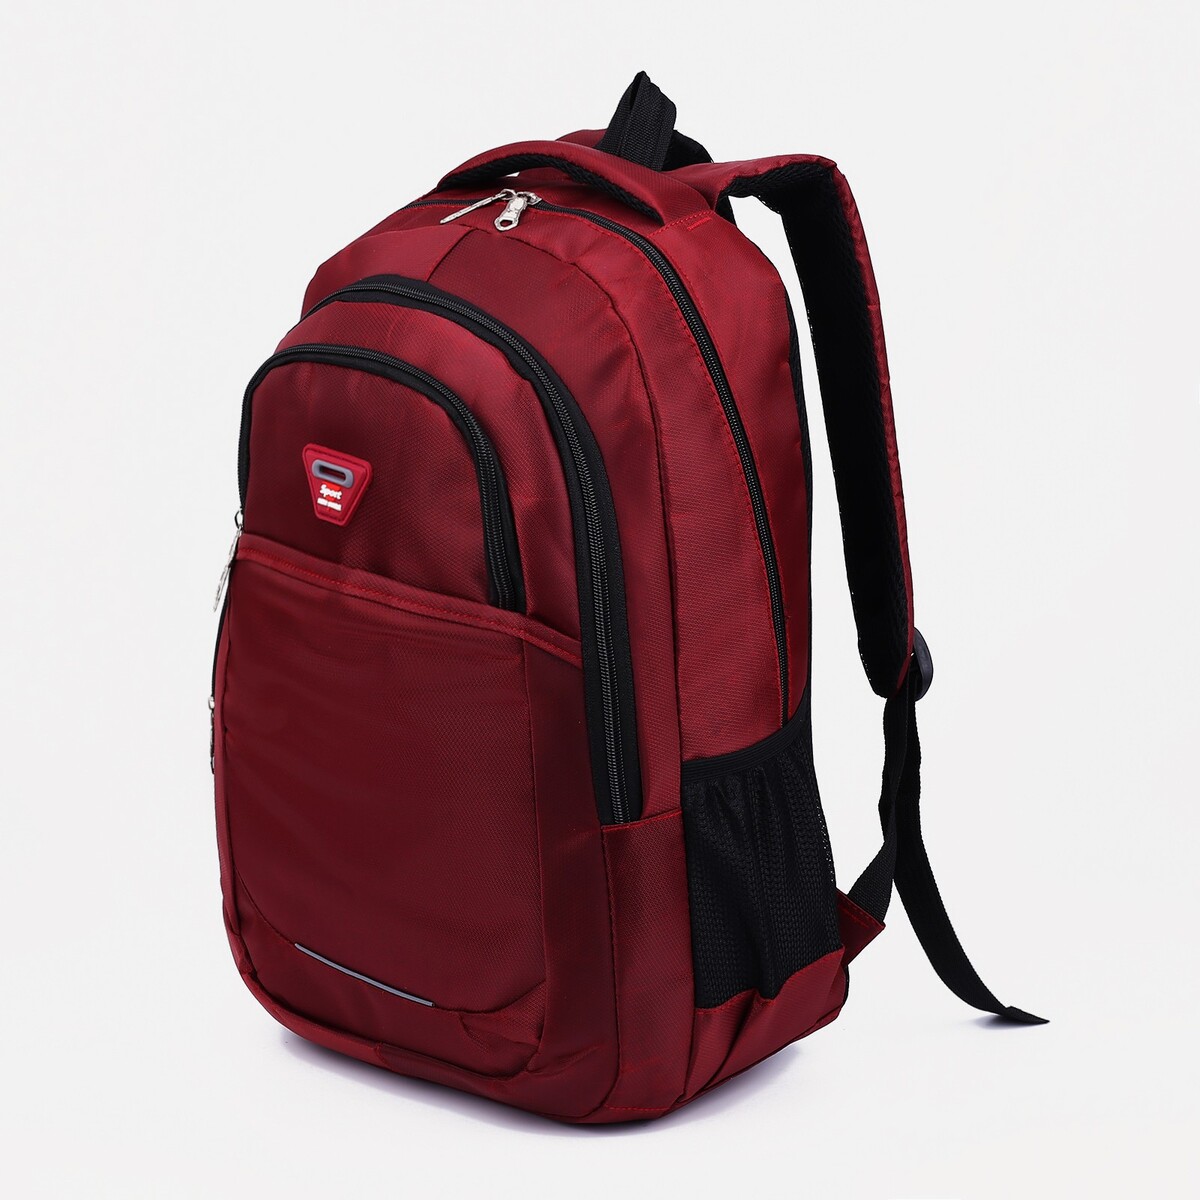 Рюкзак молодежный из текстиля, 2 отдела, 2 кармана, цвет бордовый рюкзак wenger urban contemporary 605024 14 бордовый 14 л